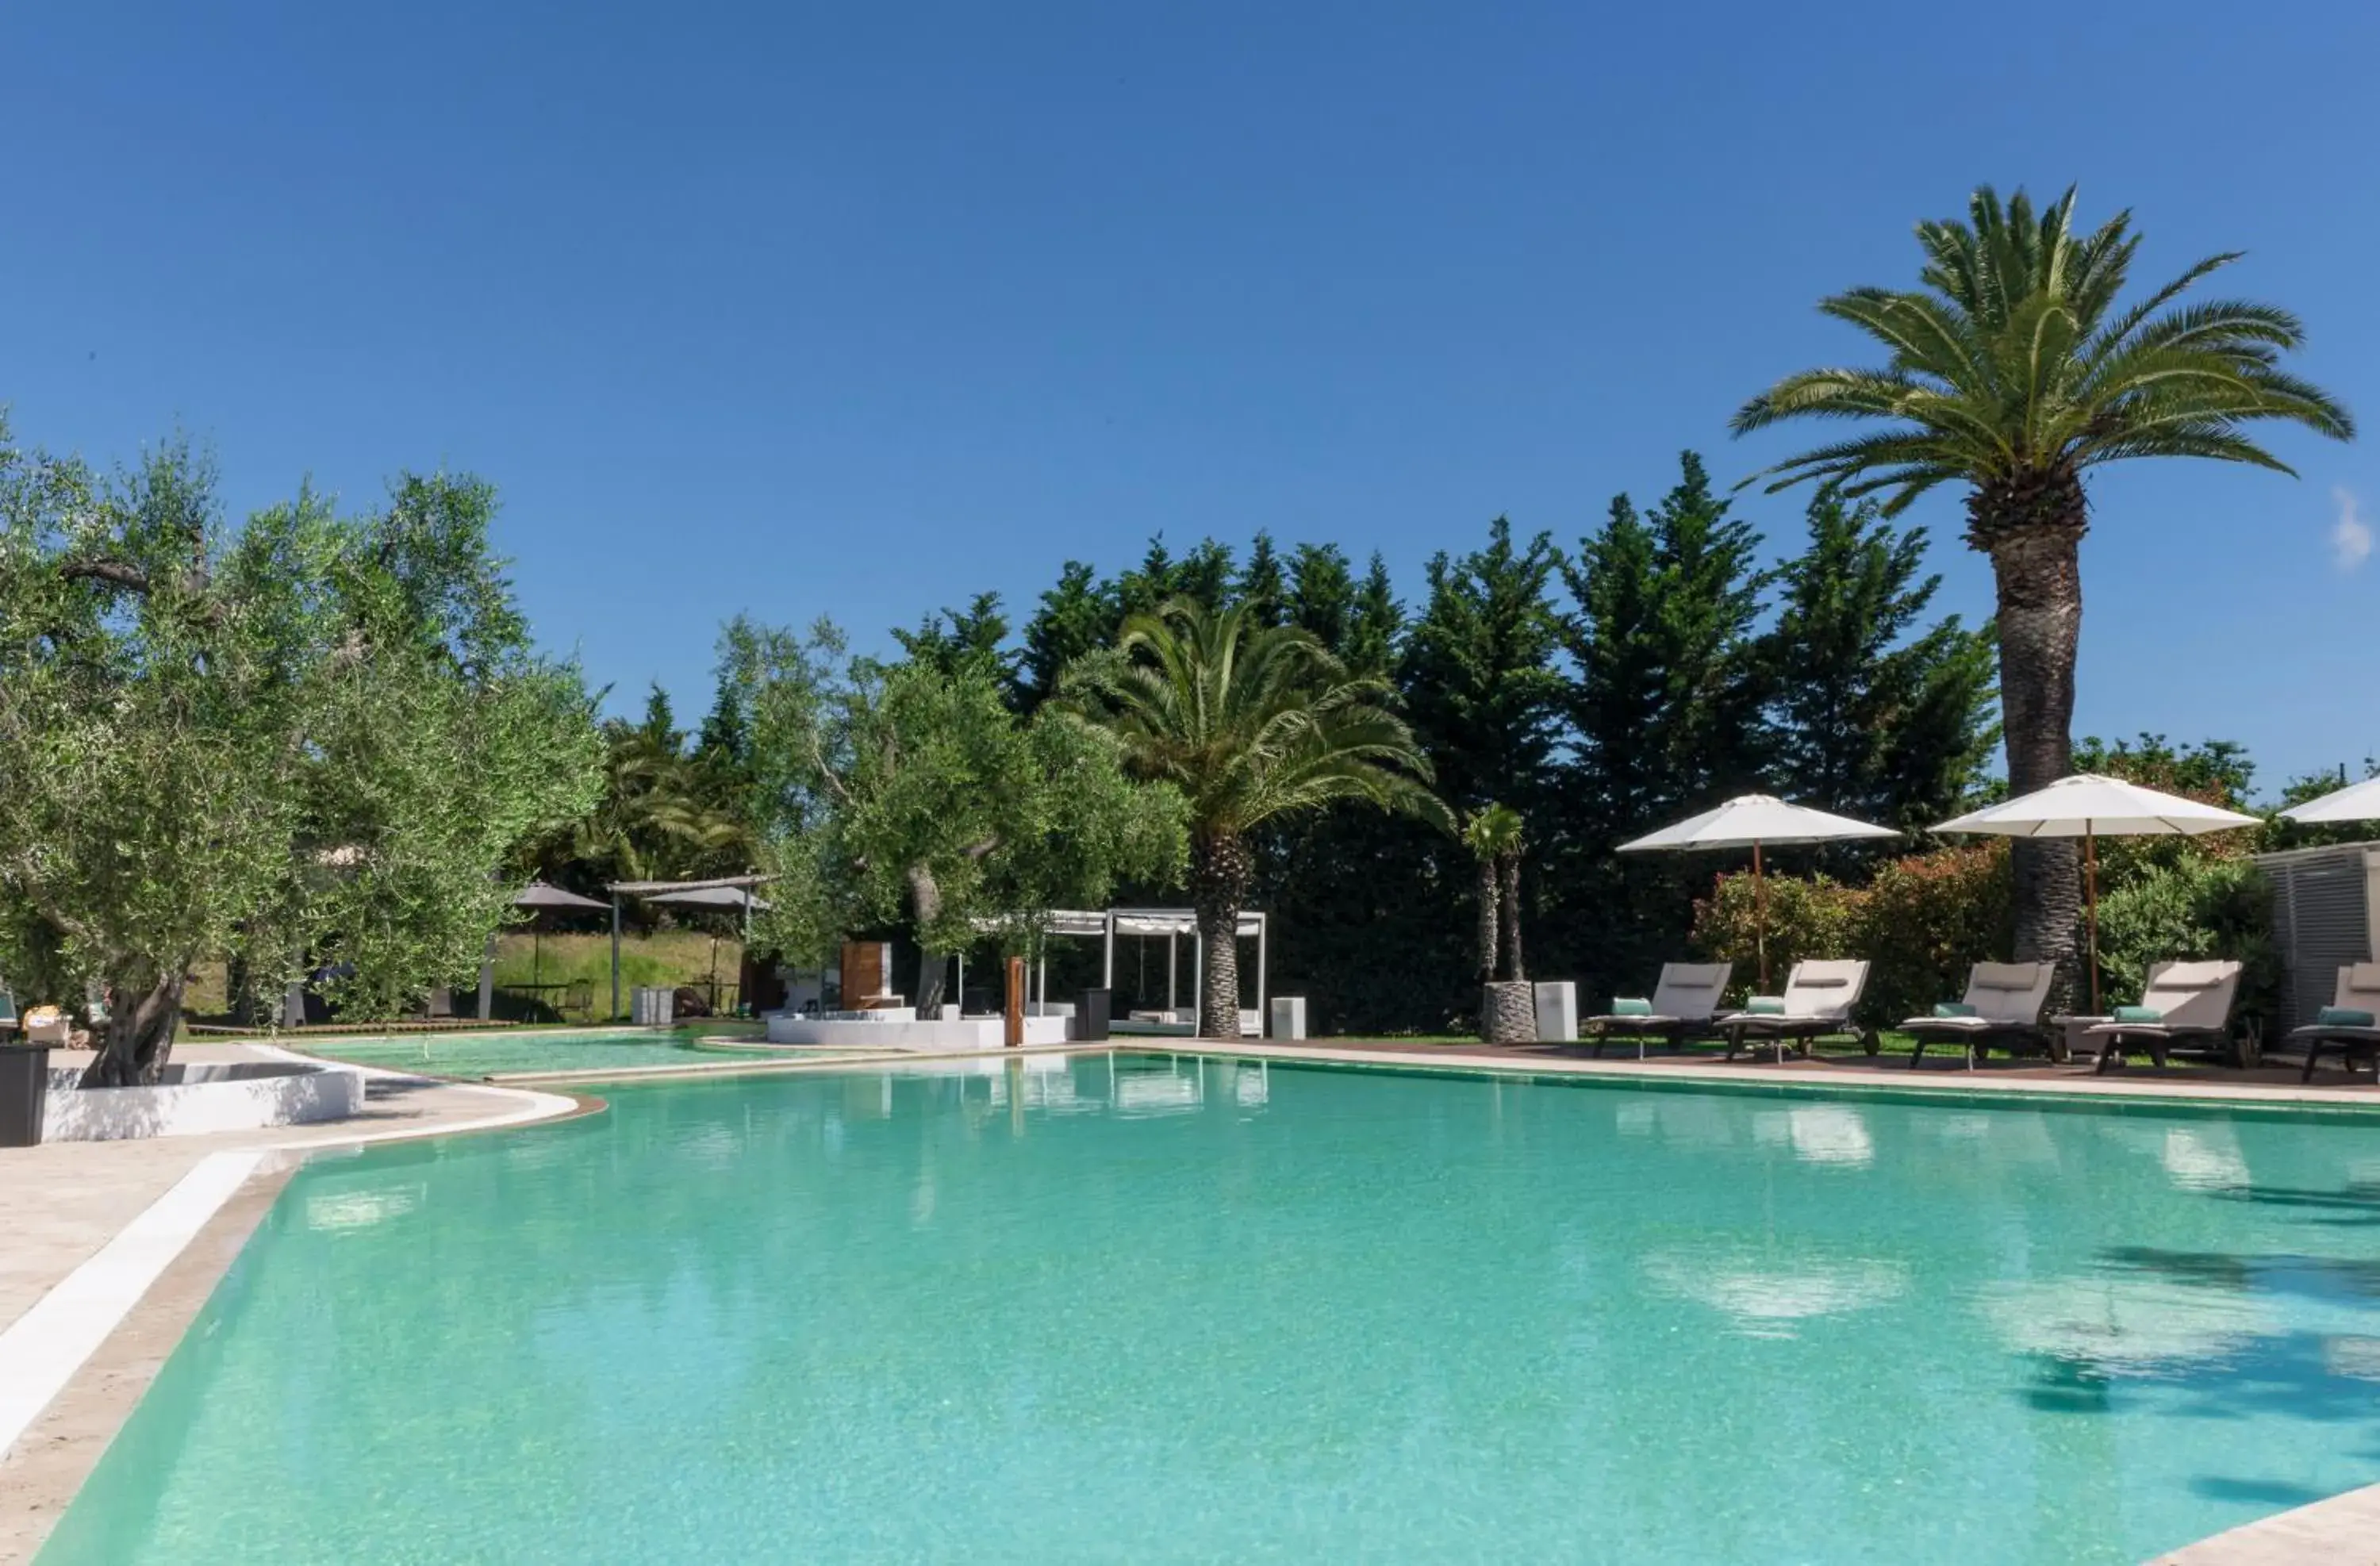 Swimming Pool in Hotel Terranobile Metaresort